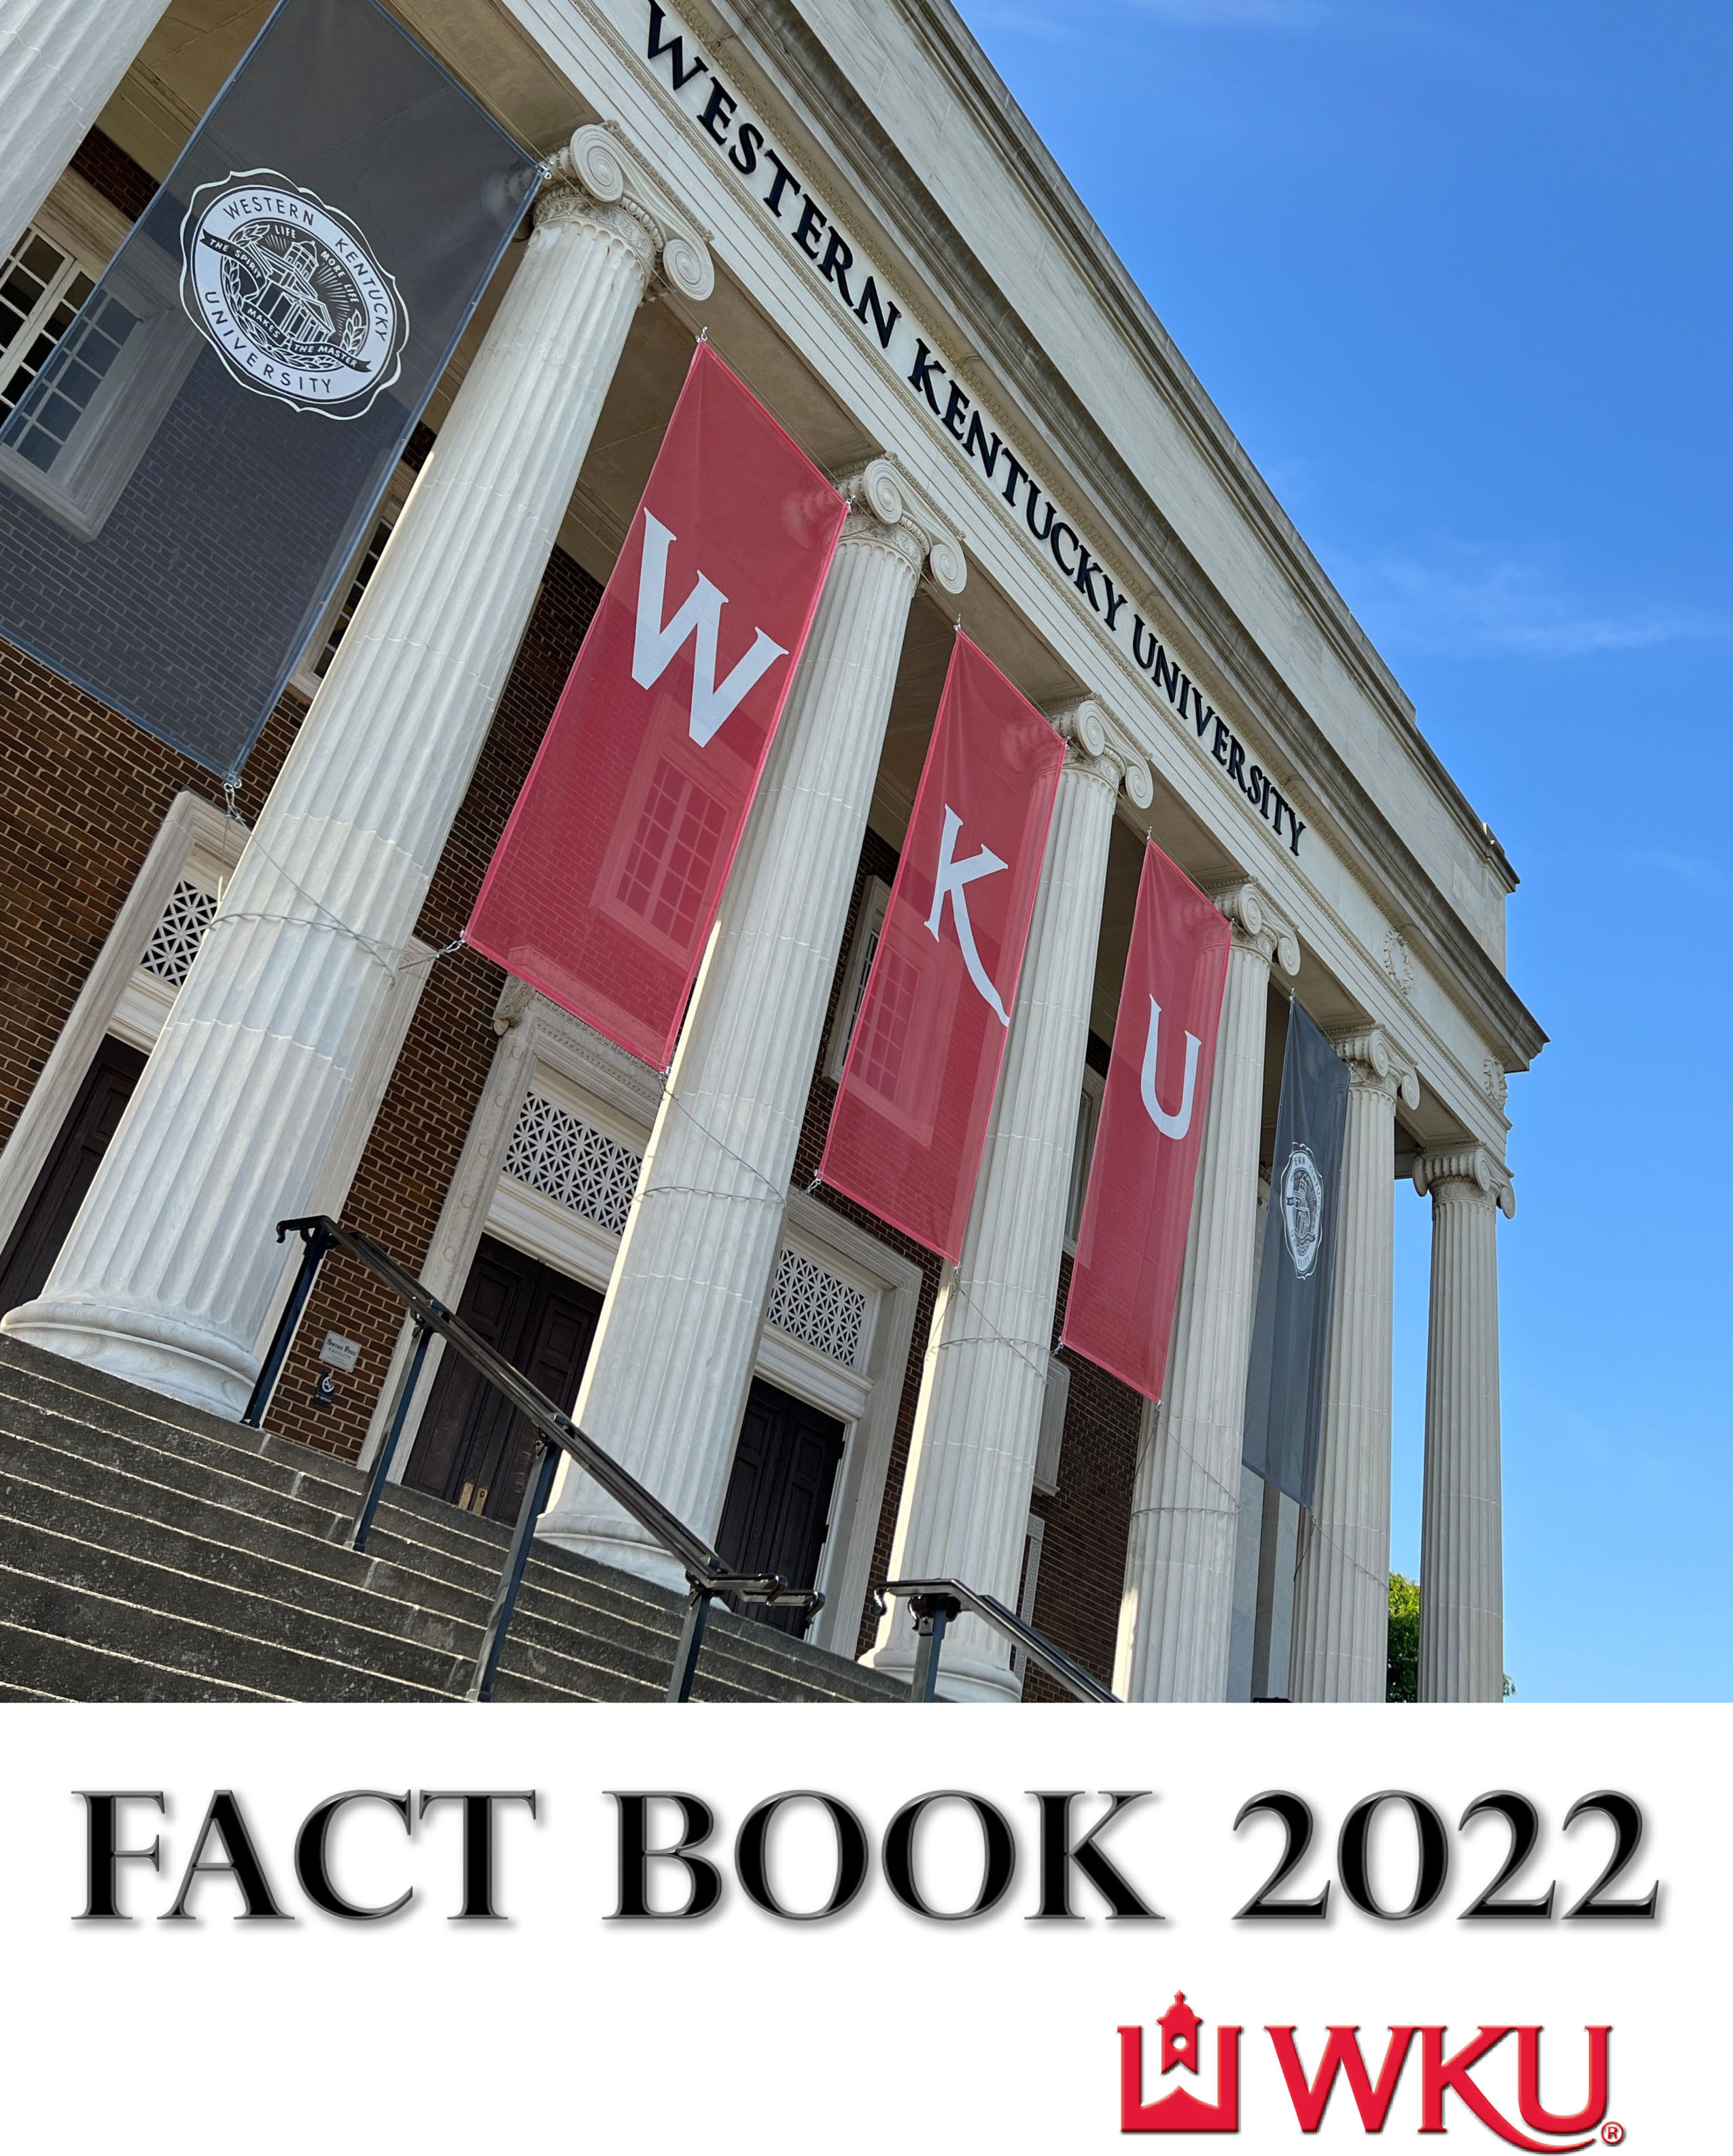 Fact Book 2022